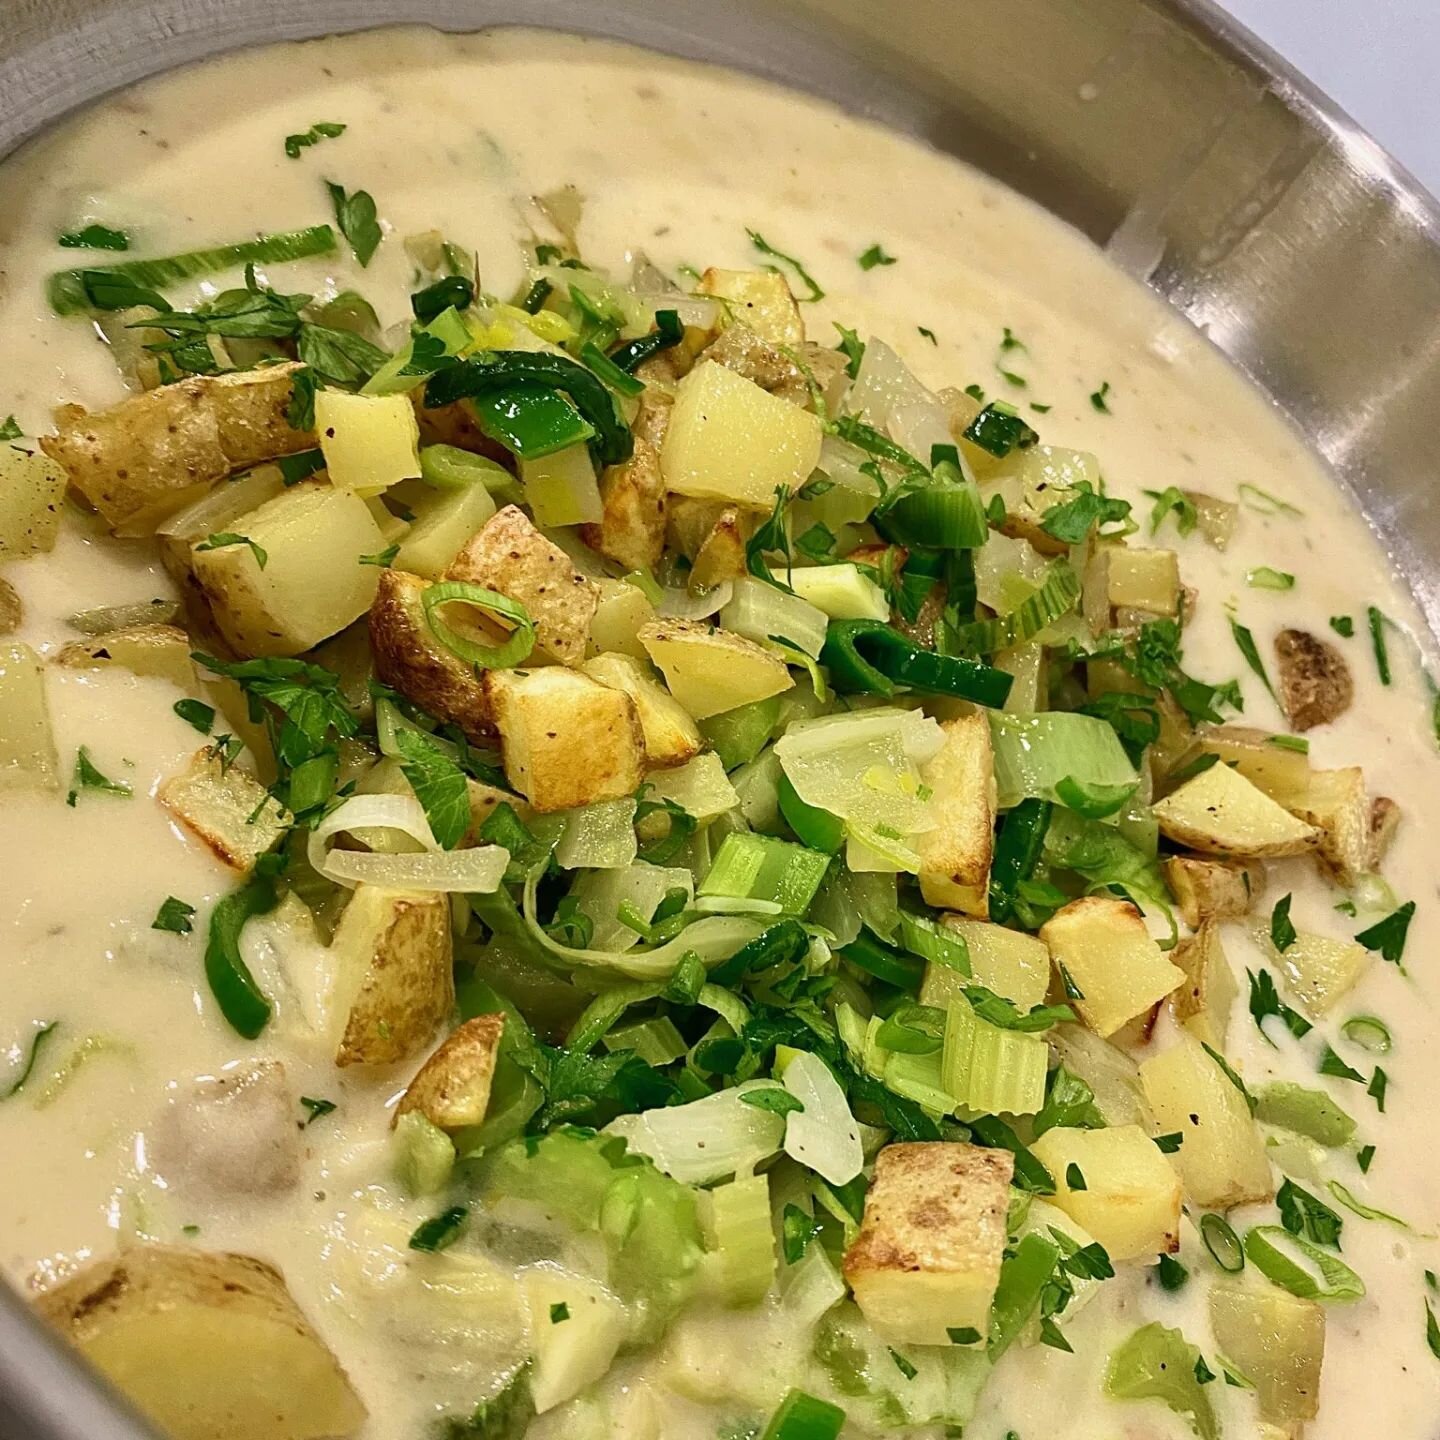 Creamy Potato Fennel Leek Soup today! 
#rvafood #rvacoffee #restaurant #rvalunch